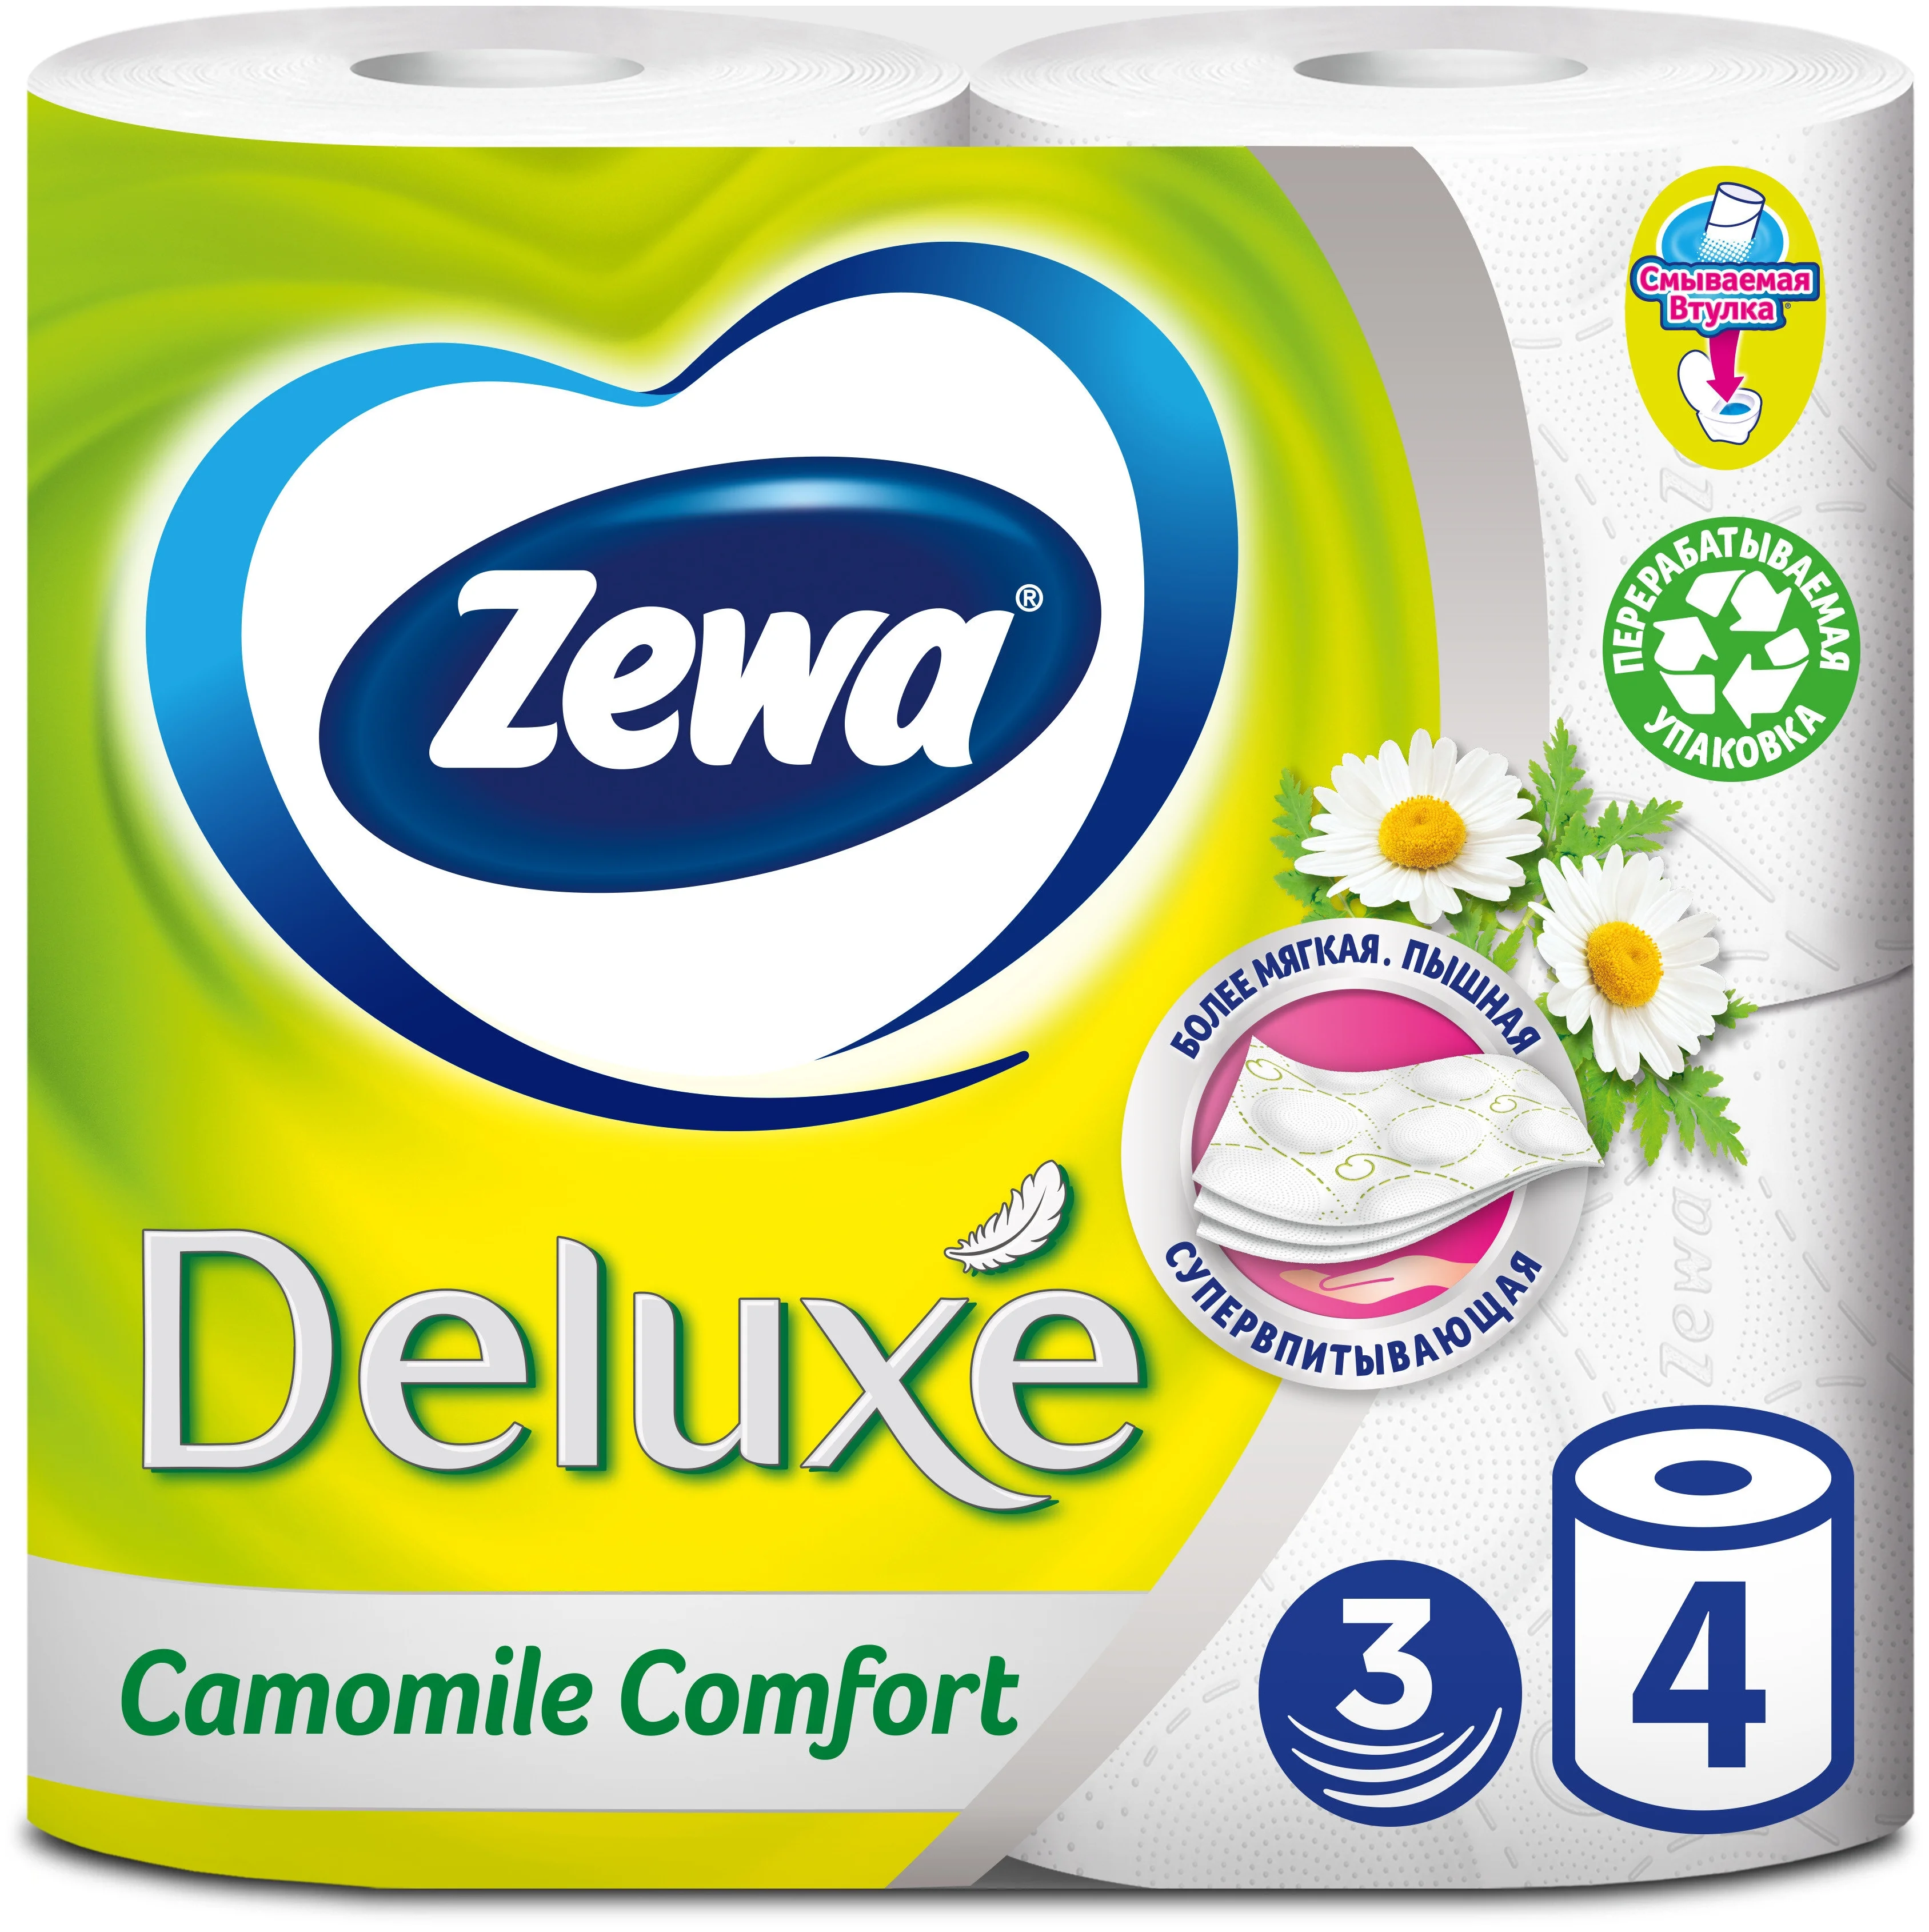 Zewa Deluxe Ромашка - особенности: ароматизация, тиснение